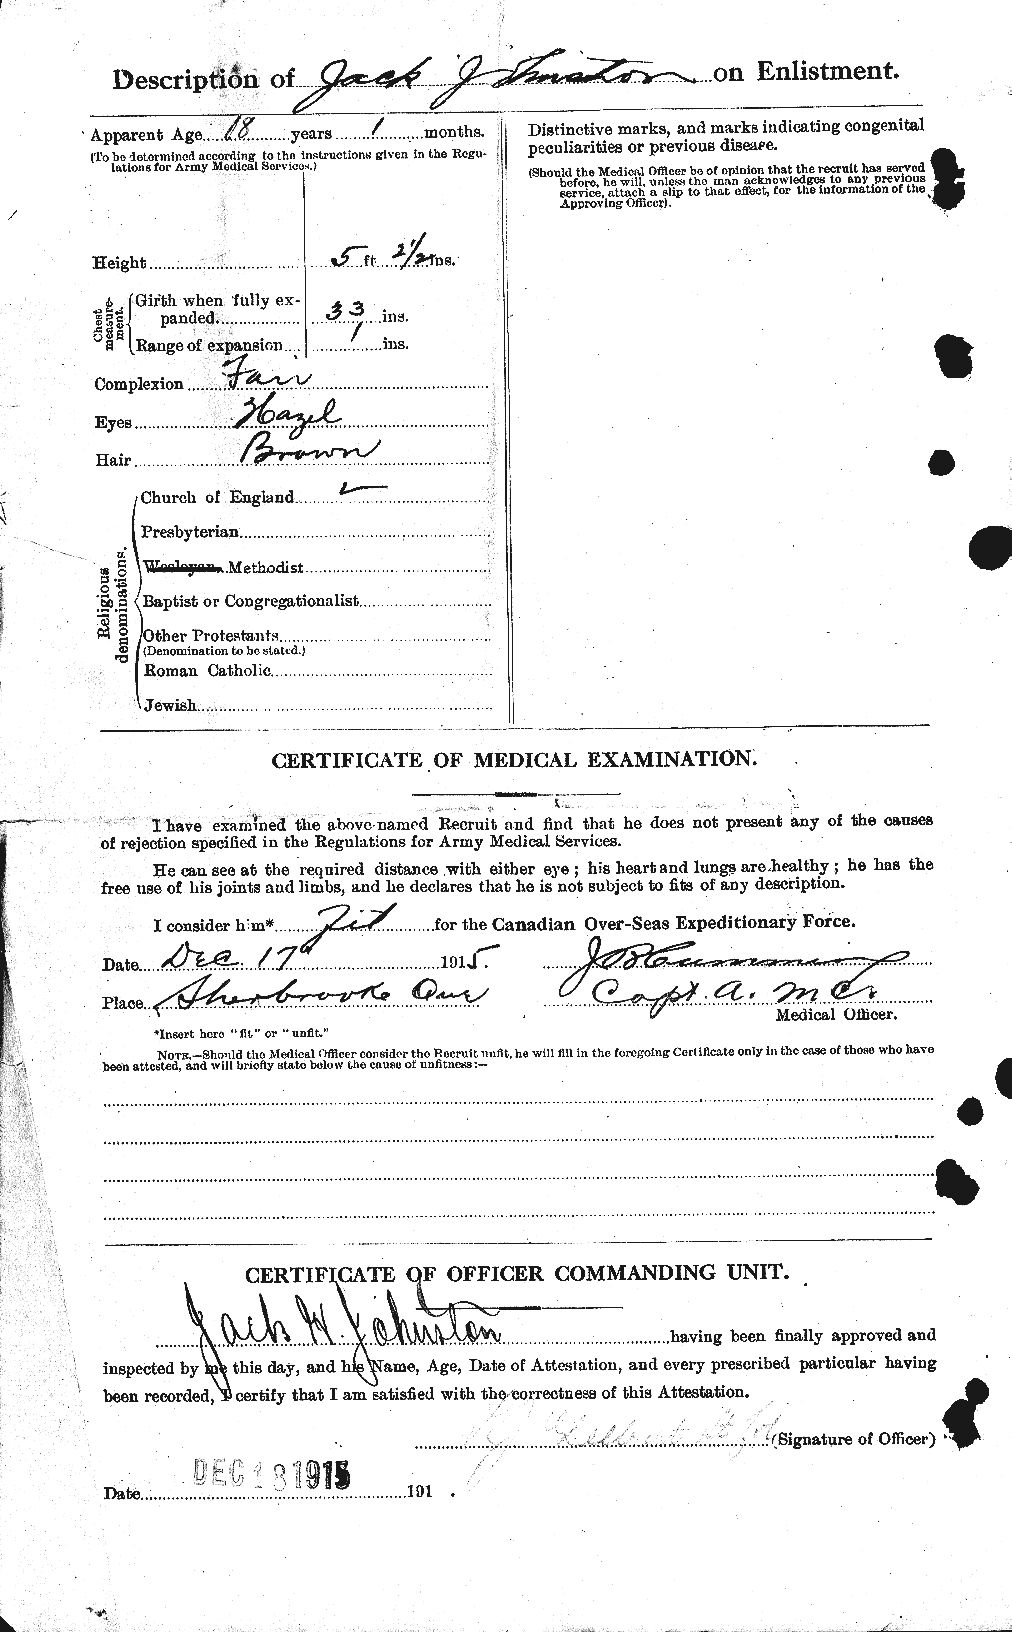 Dossiers du Personnel de la Première Guerre mondiale - CEC 420584b